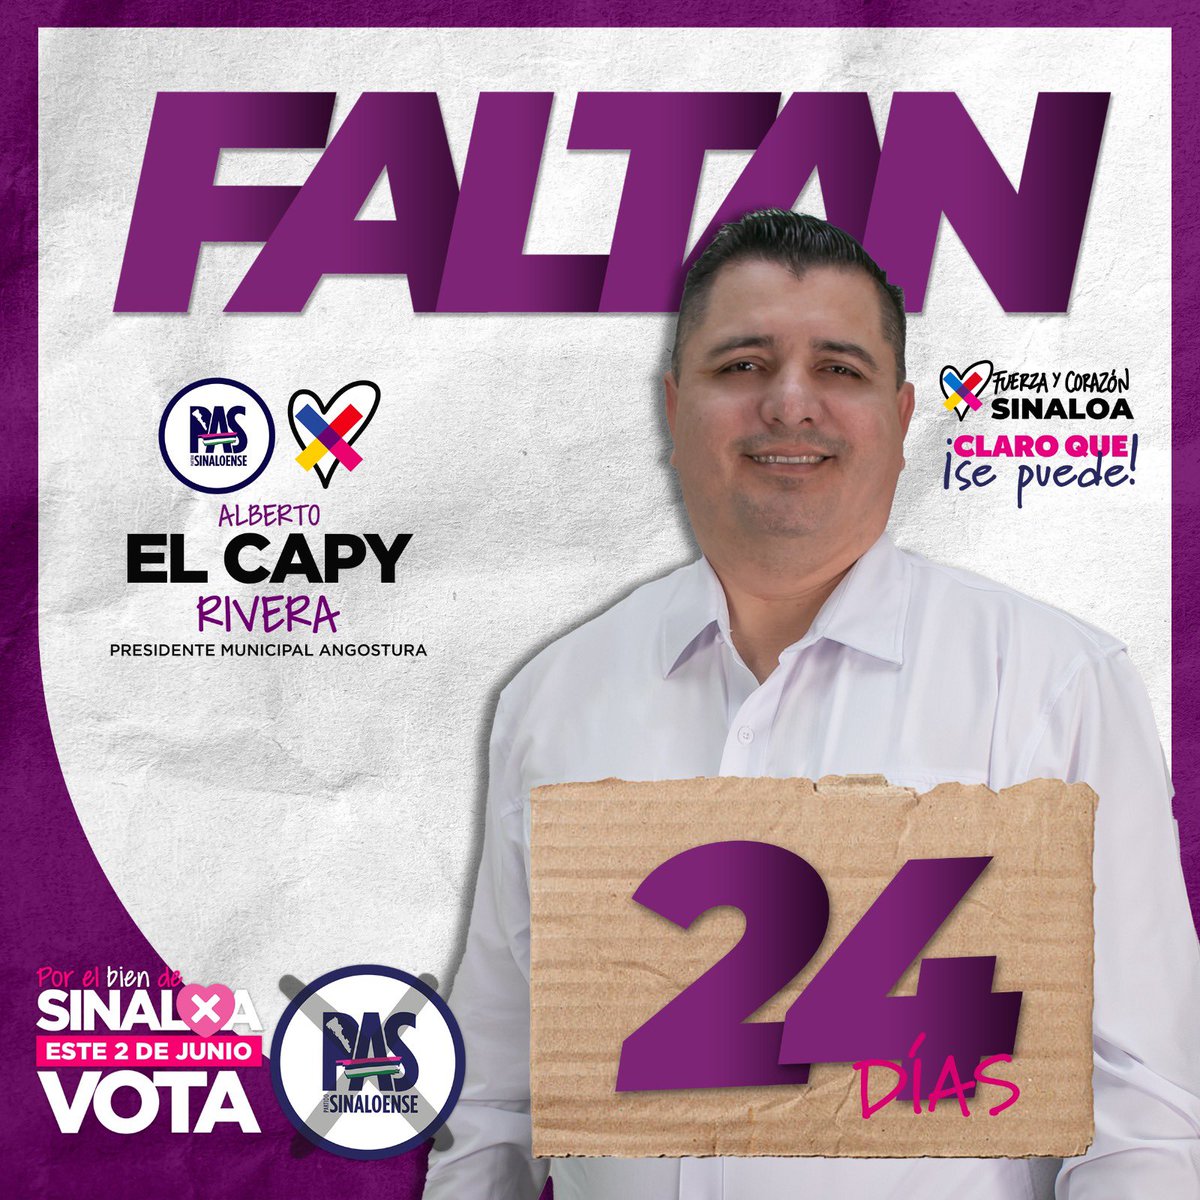 ¡Quedan solo 24 días! El cambio que #Sinaloa merece está cada vez más cerca. Estos últimos días serán cruciales para difundir nuestros compromisos y el proyecto sólido que tenemos en el #PartidoSinaloense. #PorElBienDeSinaloa #VotaPAS el 2 de junio y #ClaroQueSePuede.